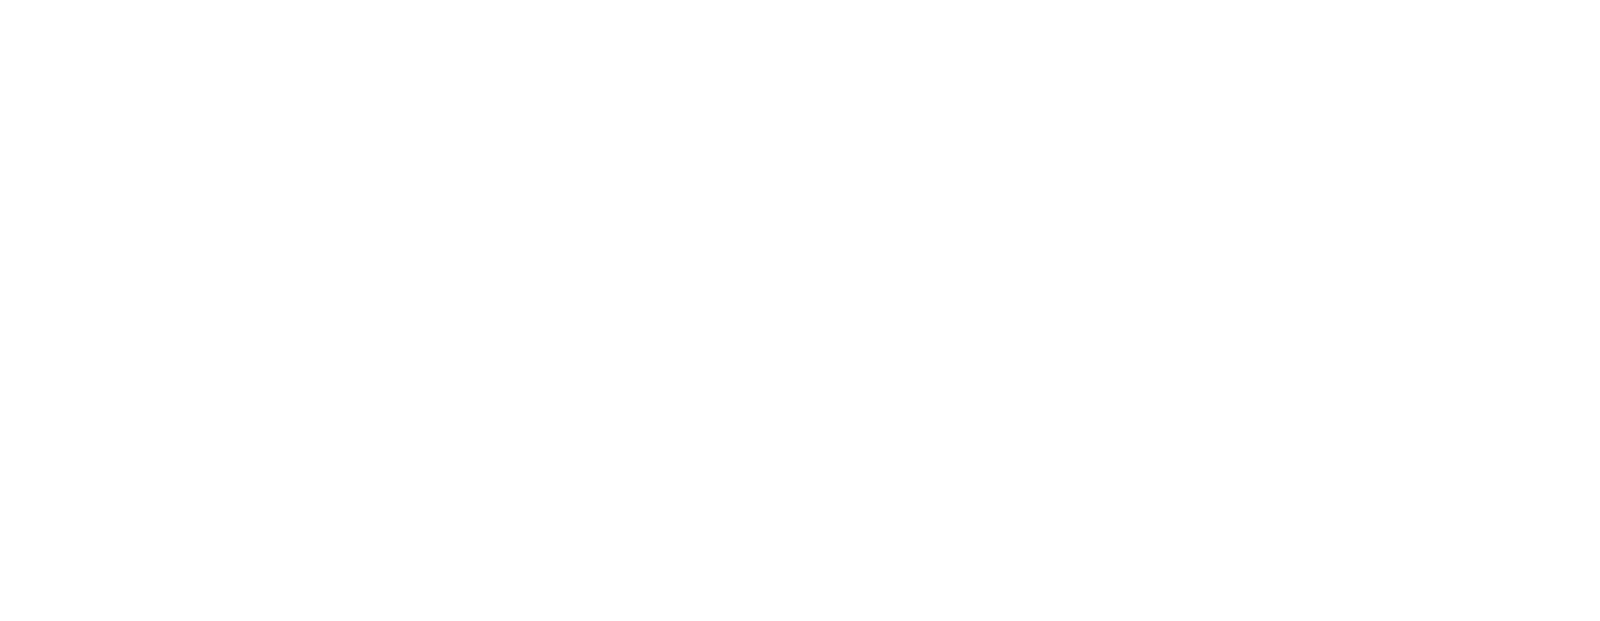 Vercocinas, patrocinador oficial del Olympia